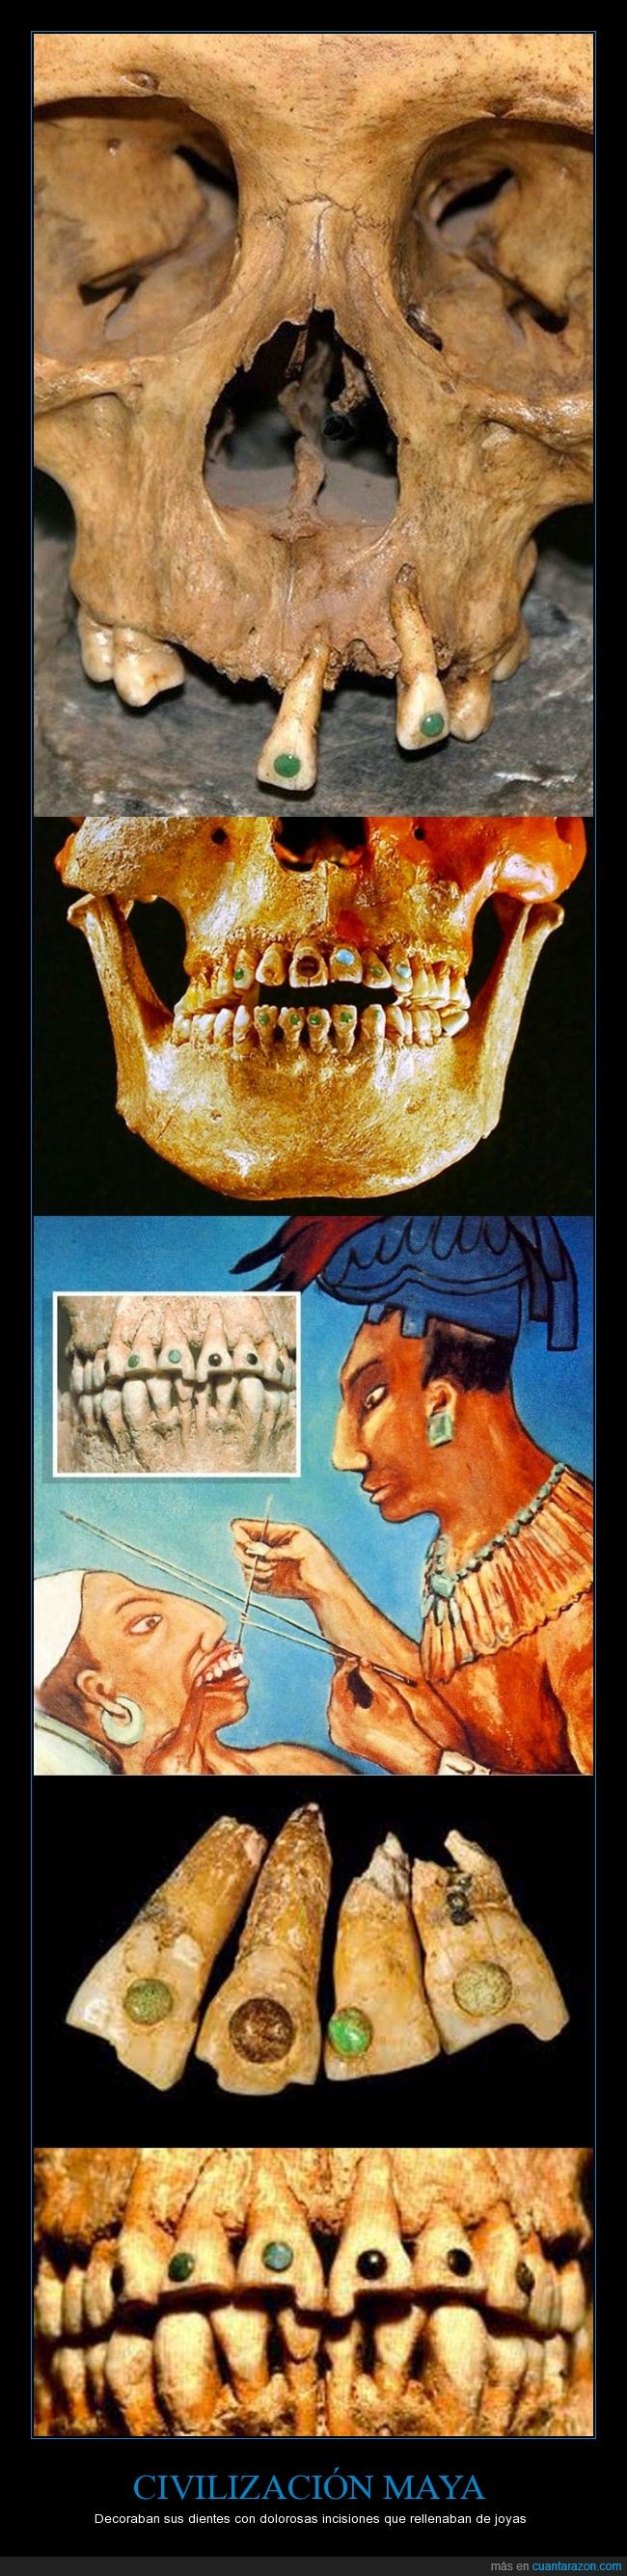 diente,dentista,joya,piedra,preciosa,dientes,maya,mayas,civilizacion,precolombino